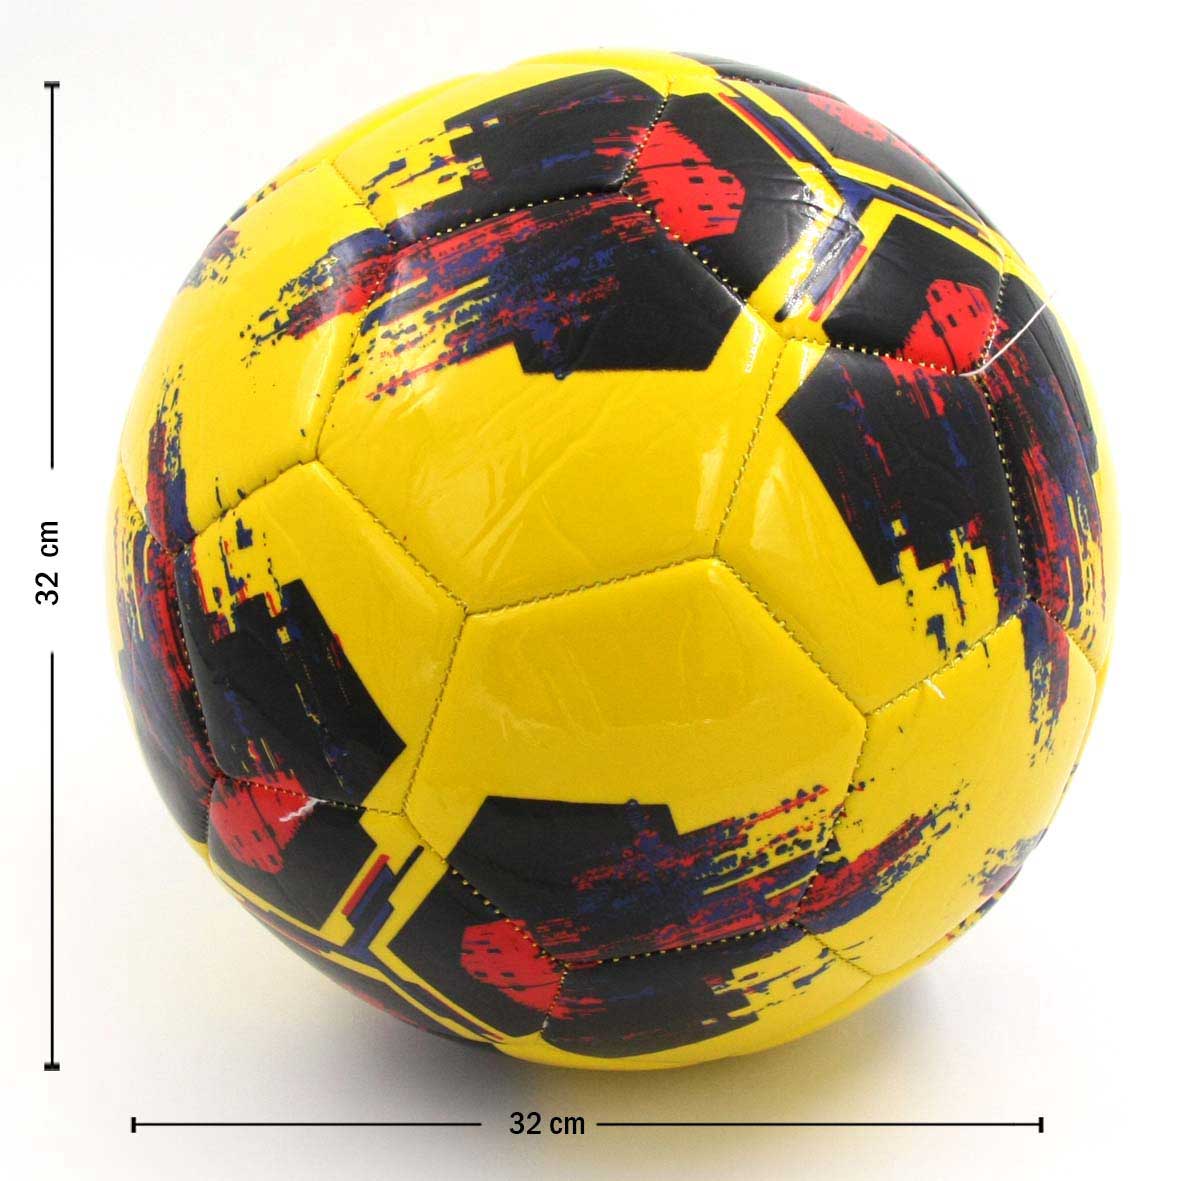 Balón de Fútbol #5 Para Niños Y Adultos Varios Diseños